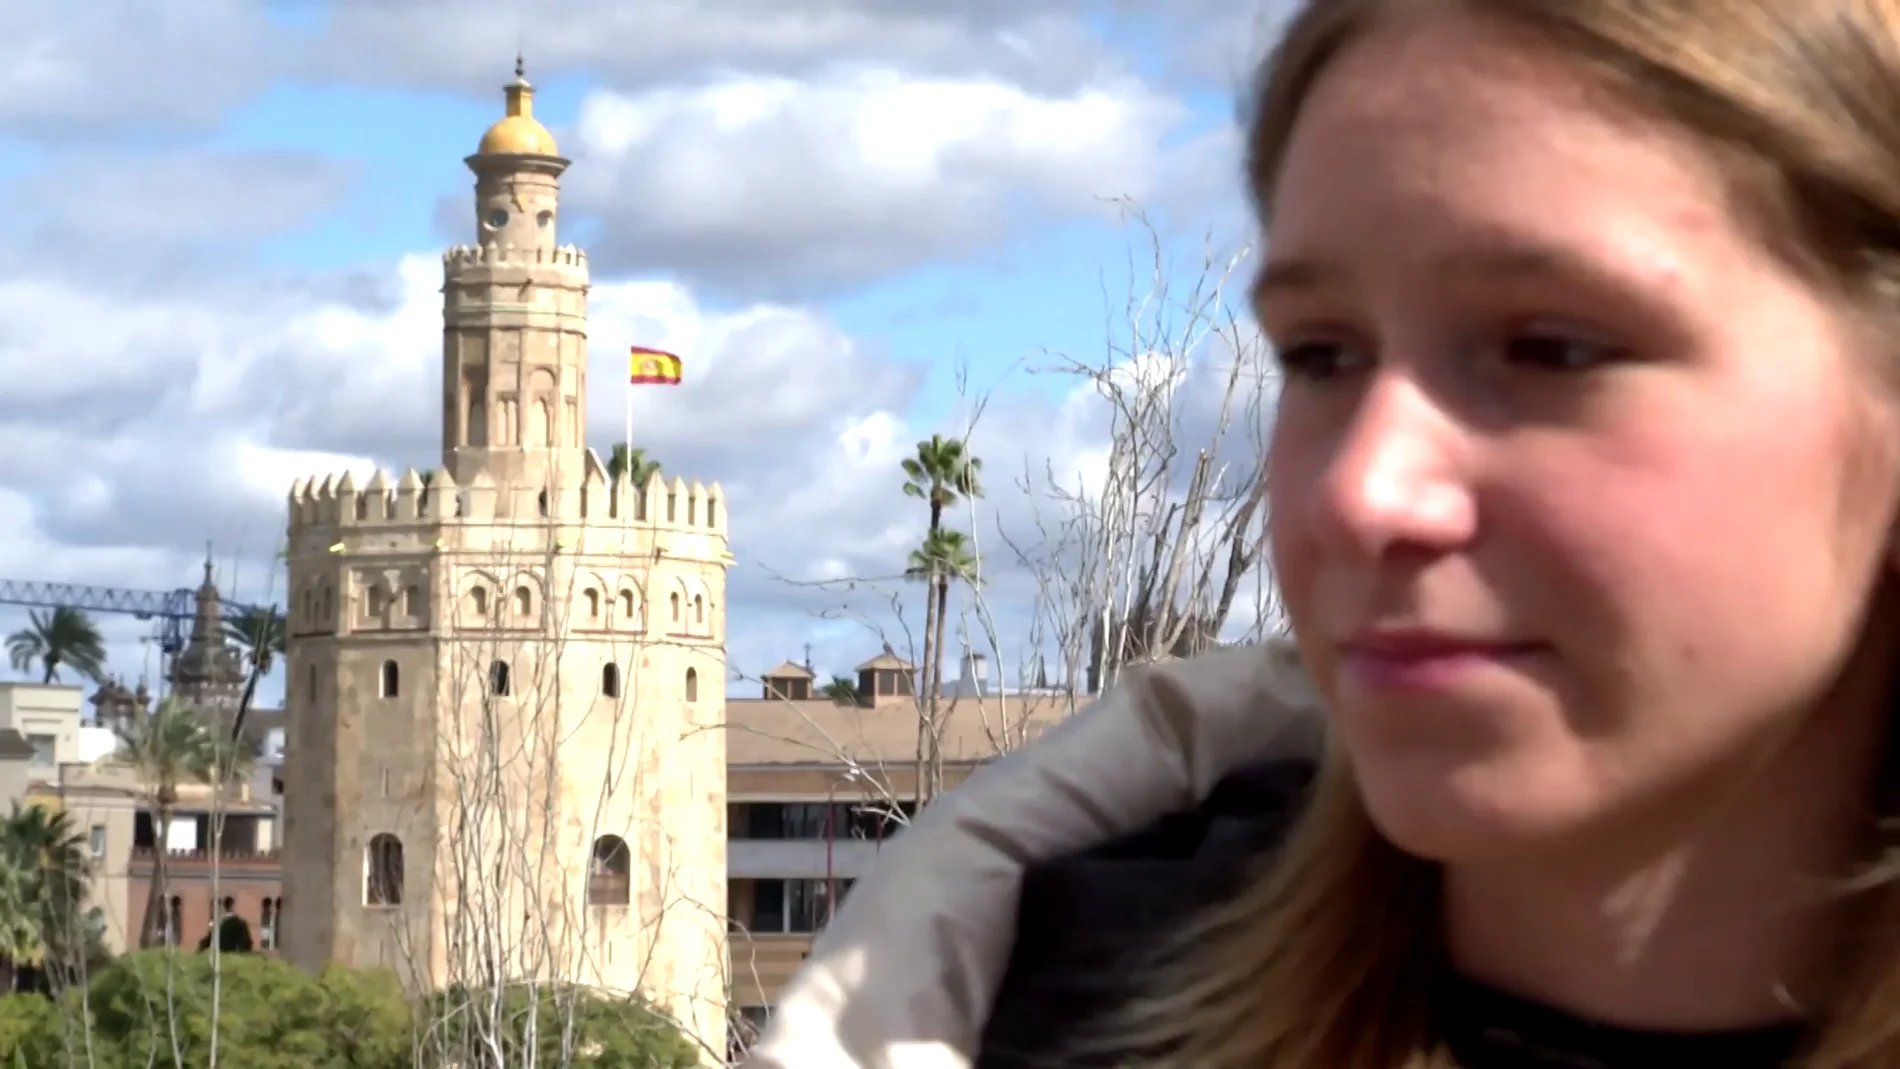 El testimonio de una joven ucraniana tras un año como refugiada en Sevilla: "No era del todo consciente"